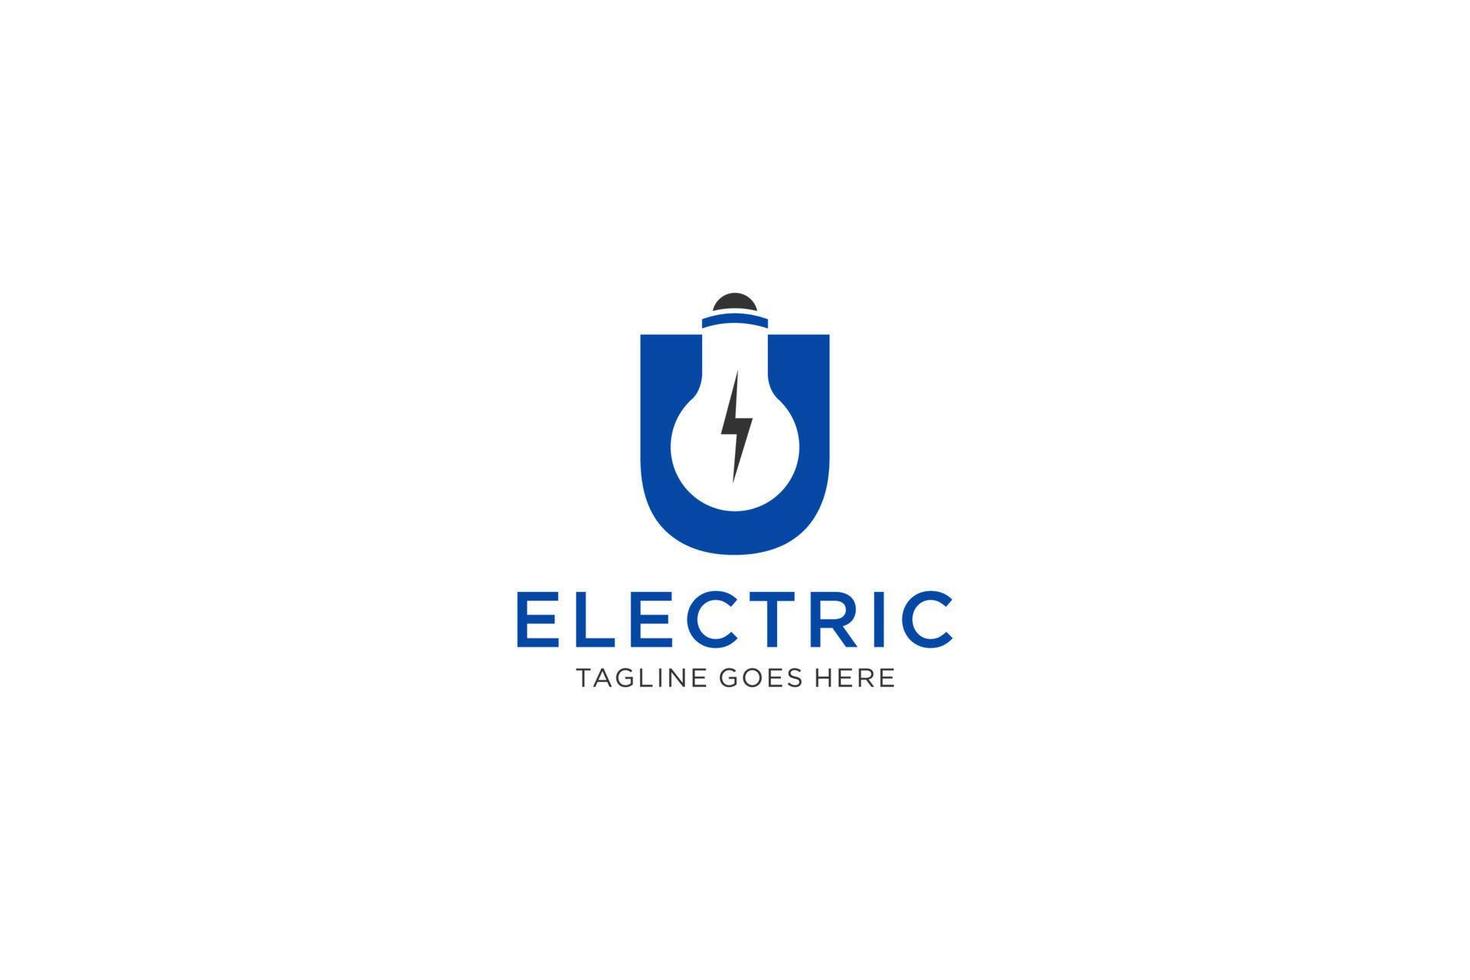 u brief logo ontwerp met licht lamp en bliksem bout. elektrisch bout brief logo. vector